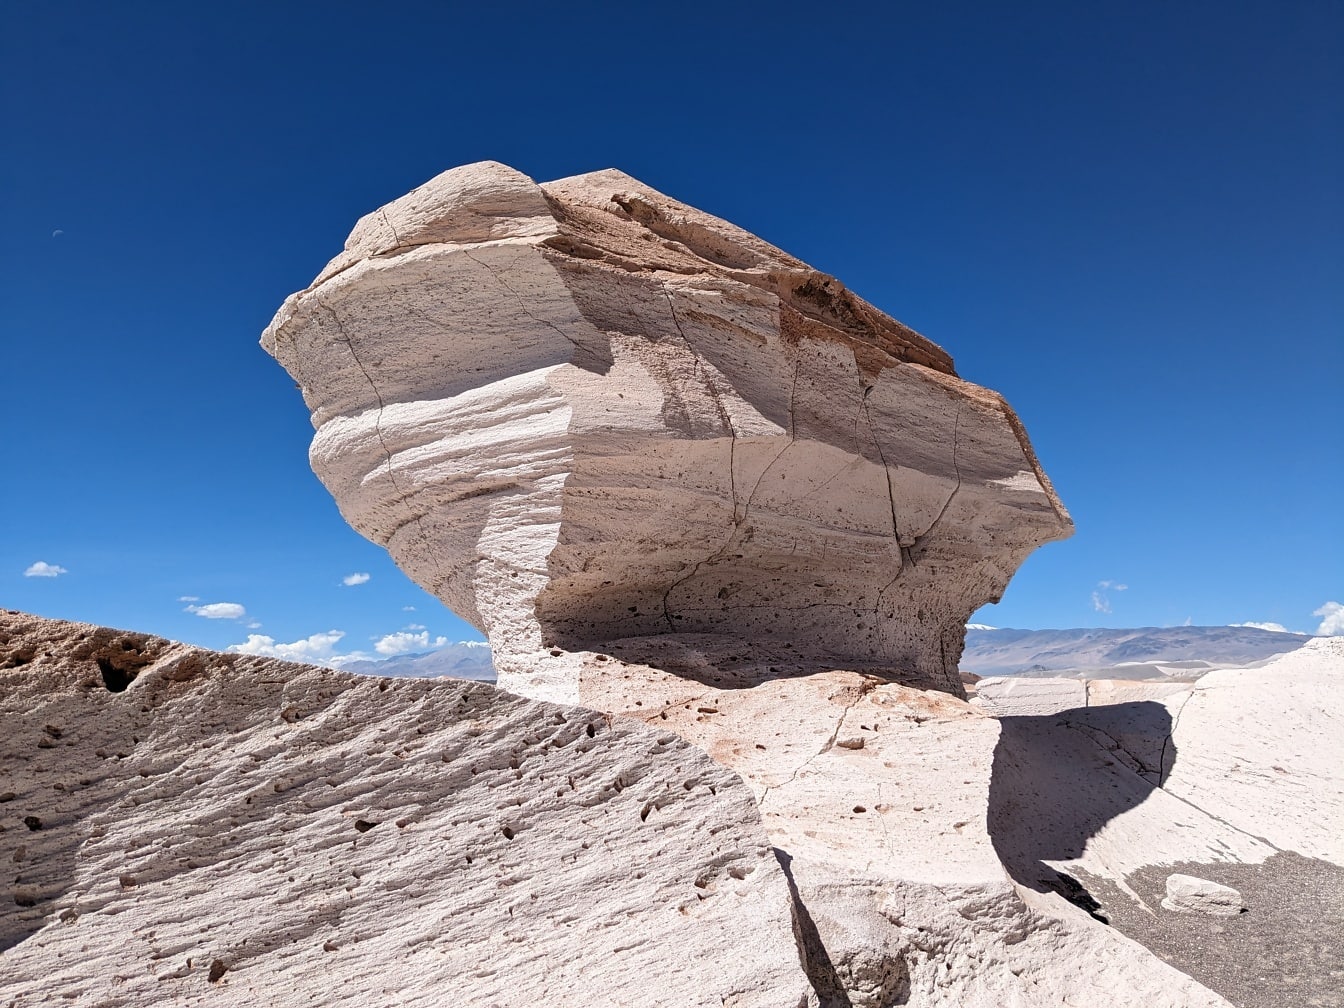 Formación rocosa de piedra pómez sedimentaria de gran tamaño en el desierto